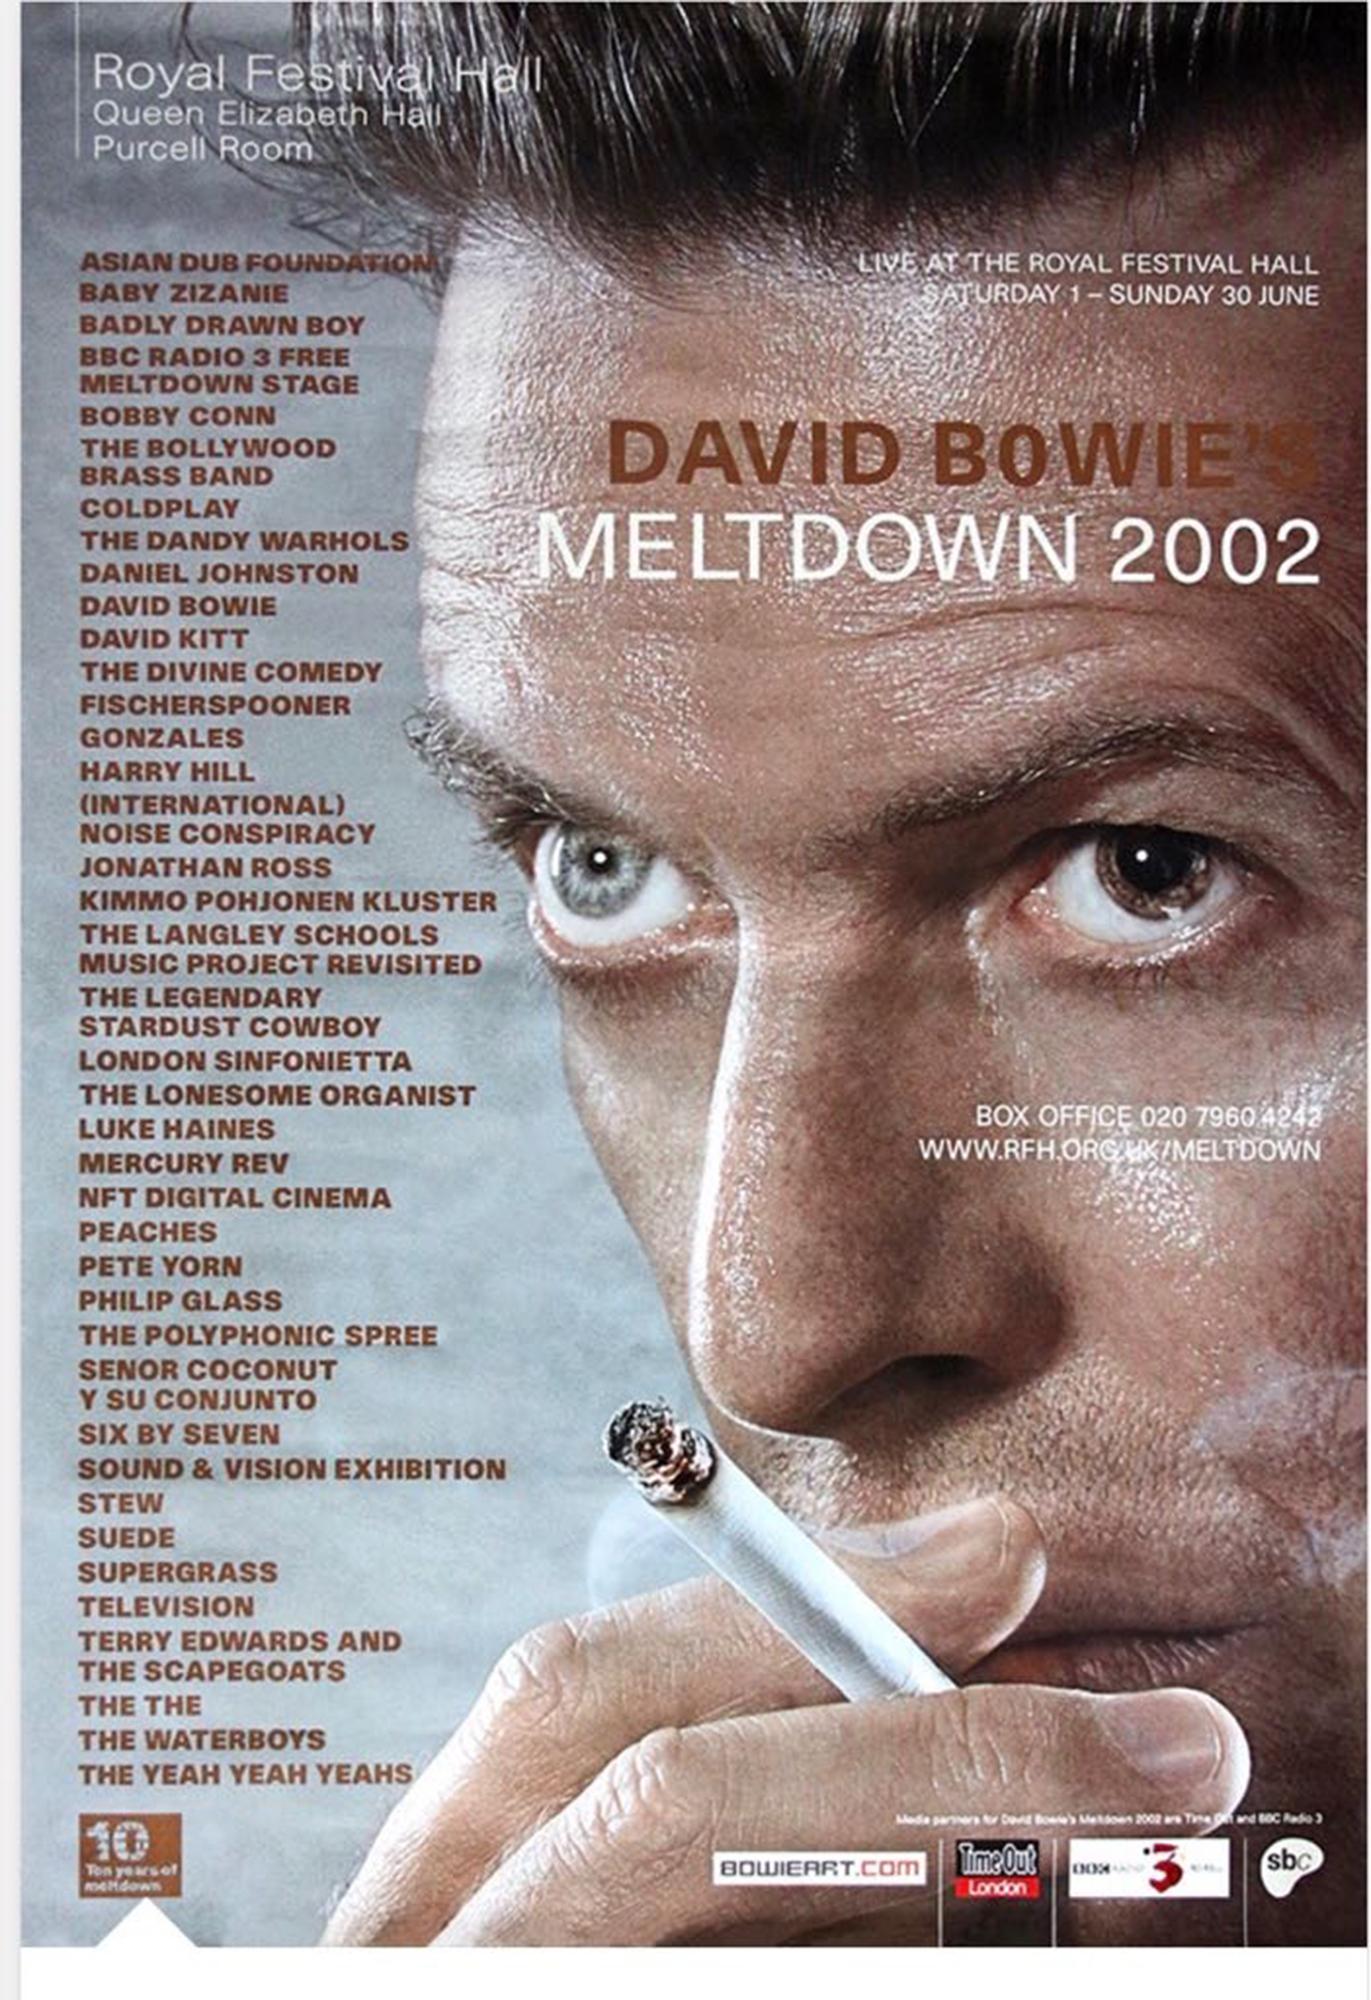 Attention à tous les fans de David Bowie ... Ce grand et rare poster au format 60